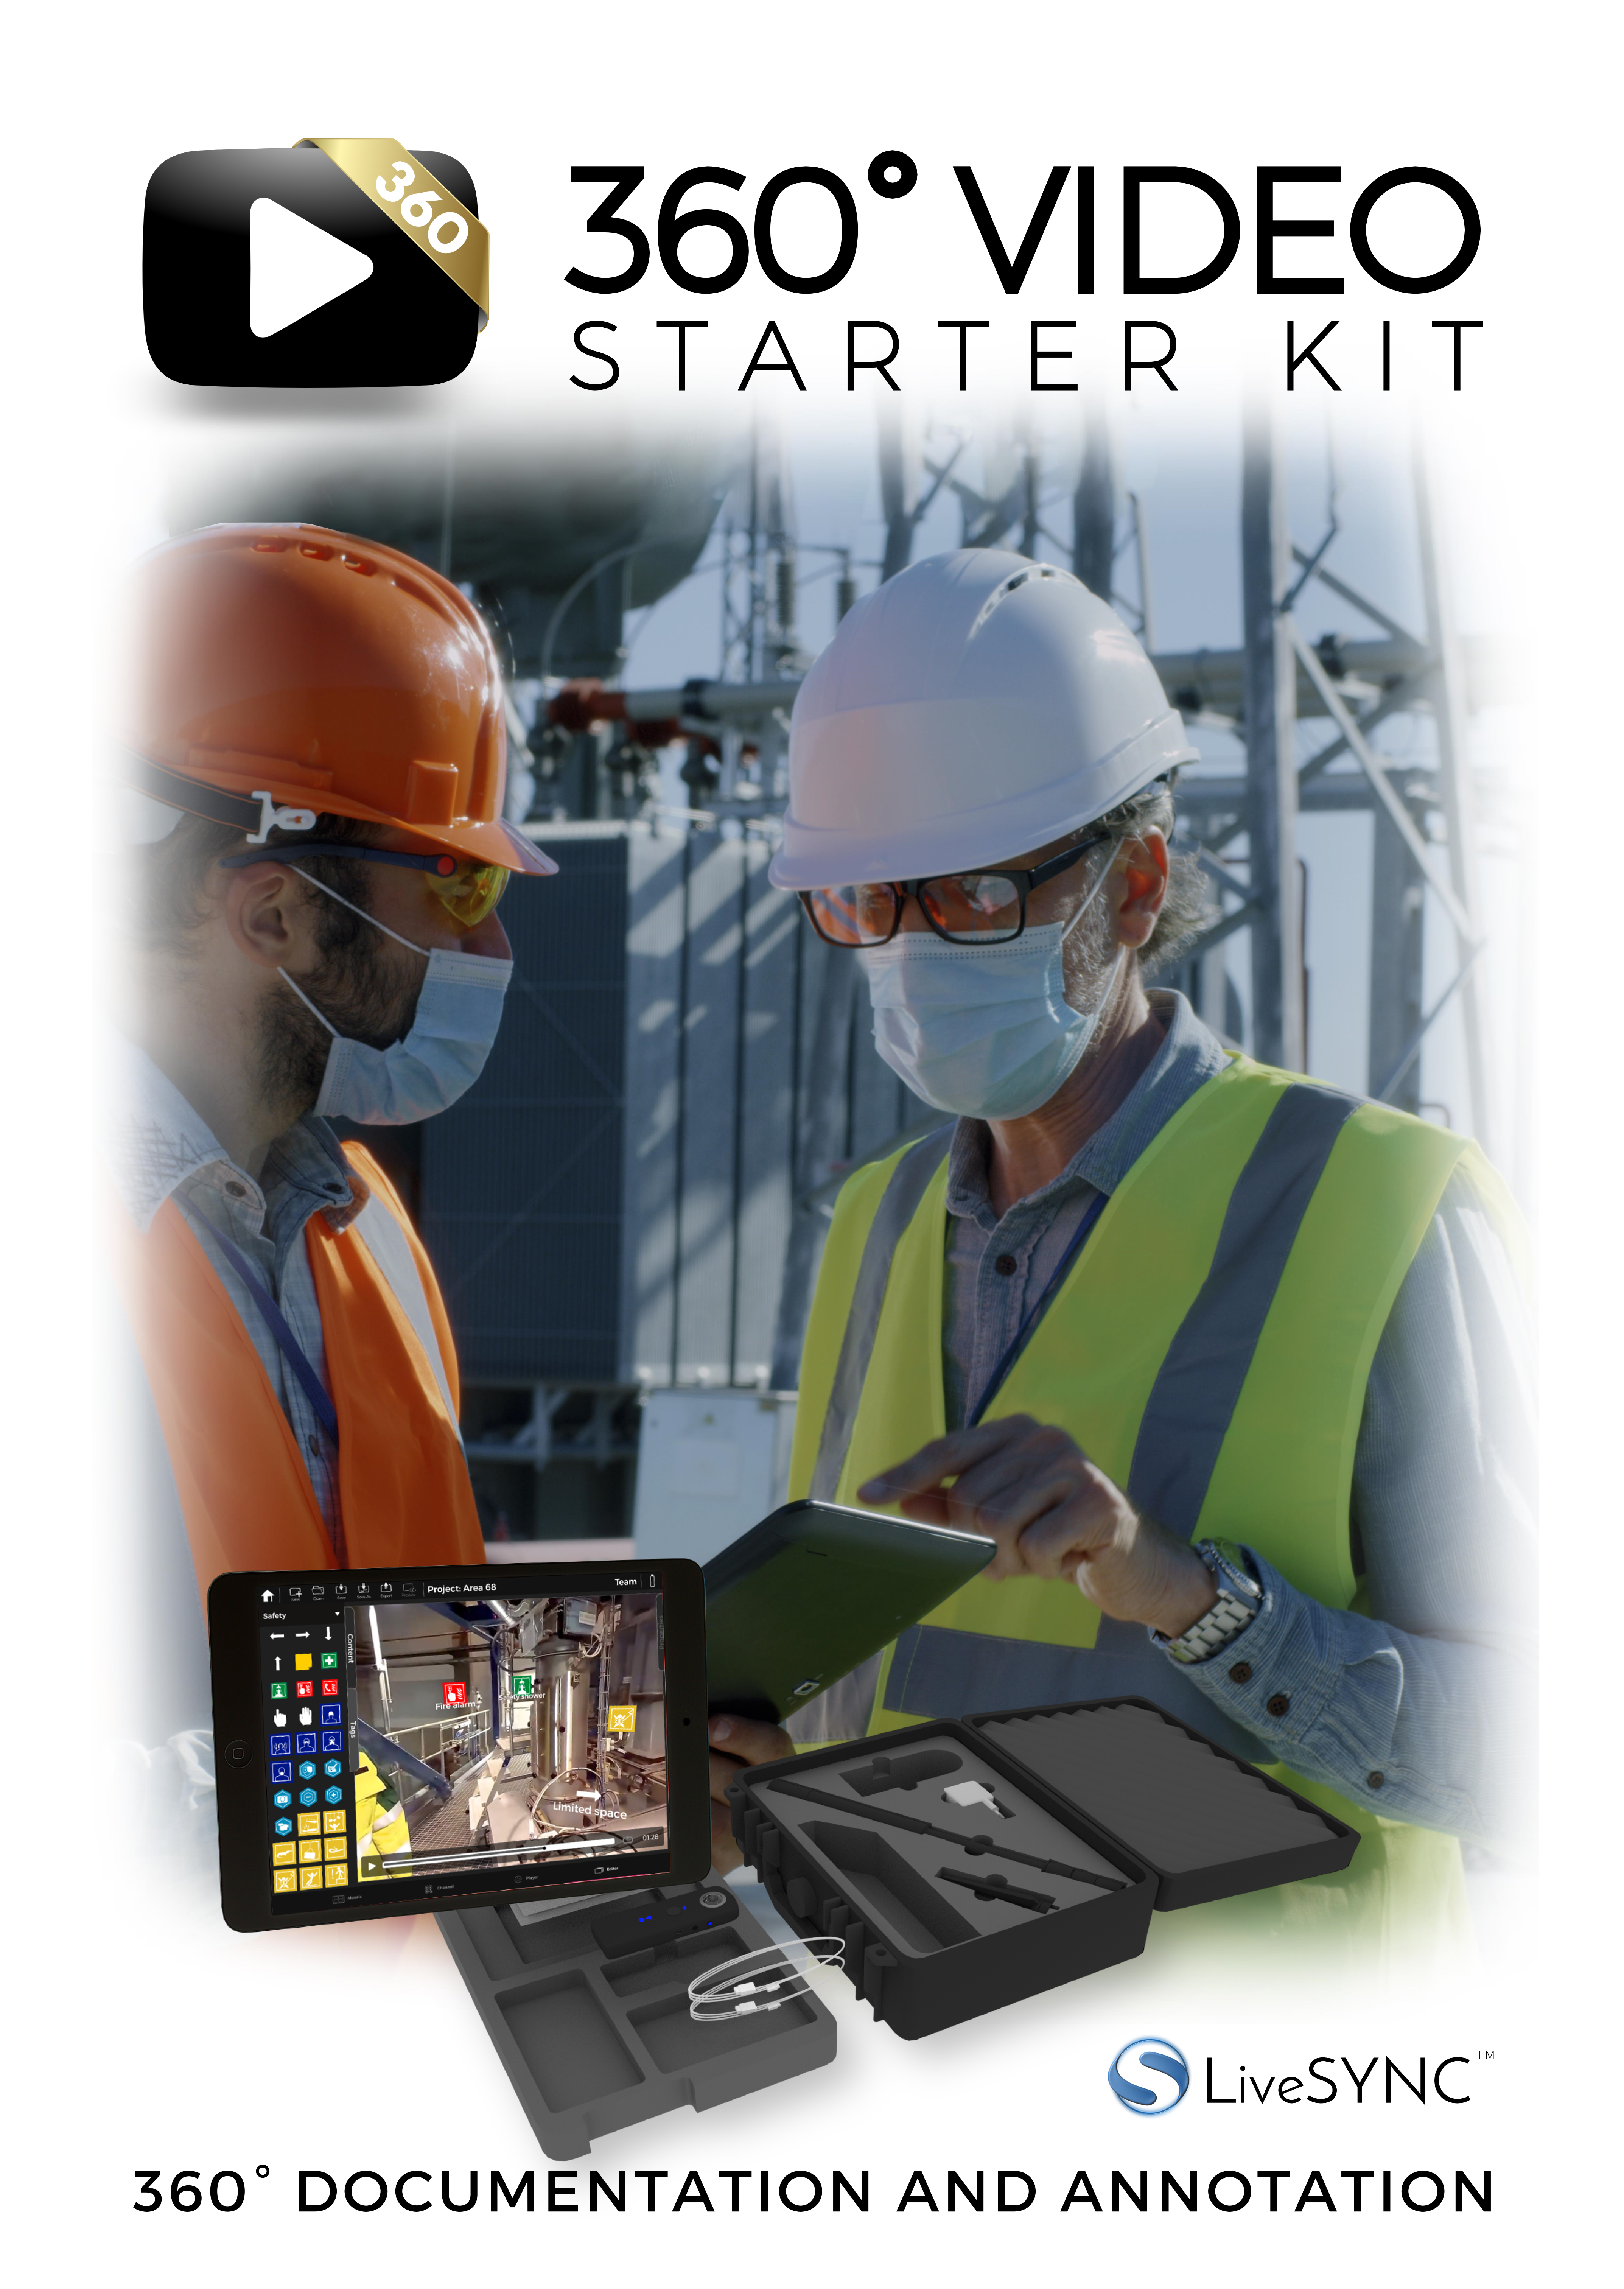 360 Video Starter Kit